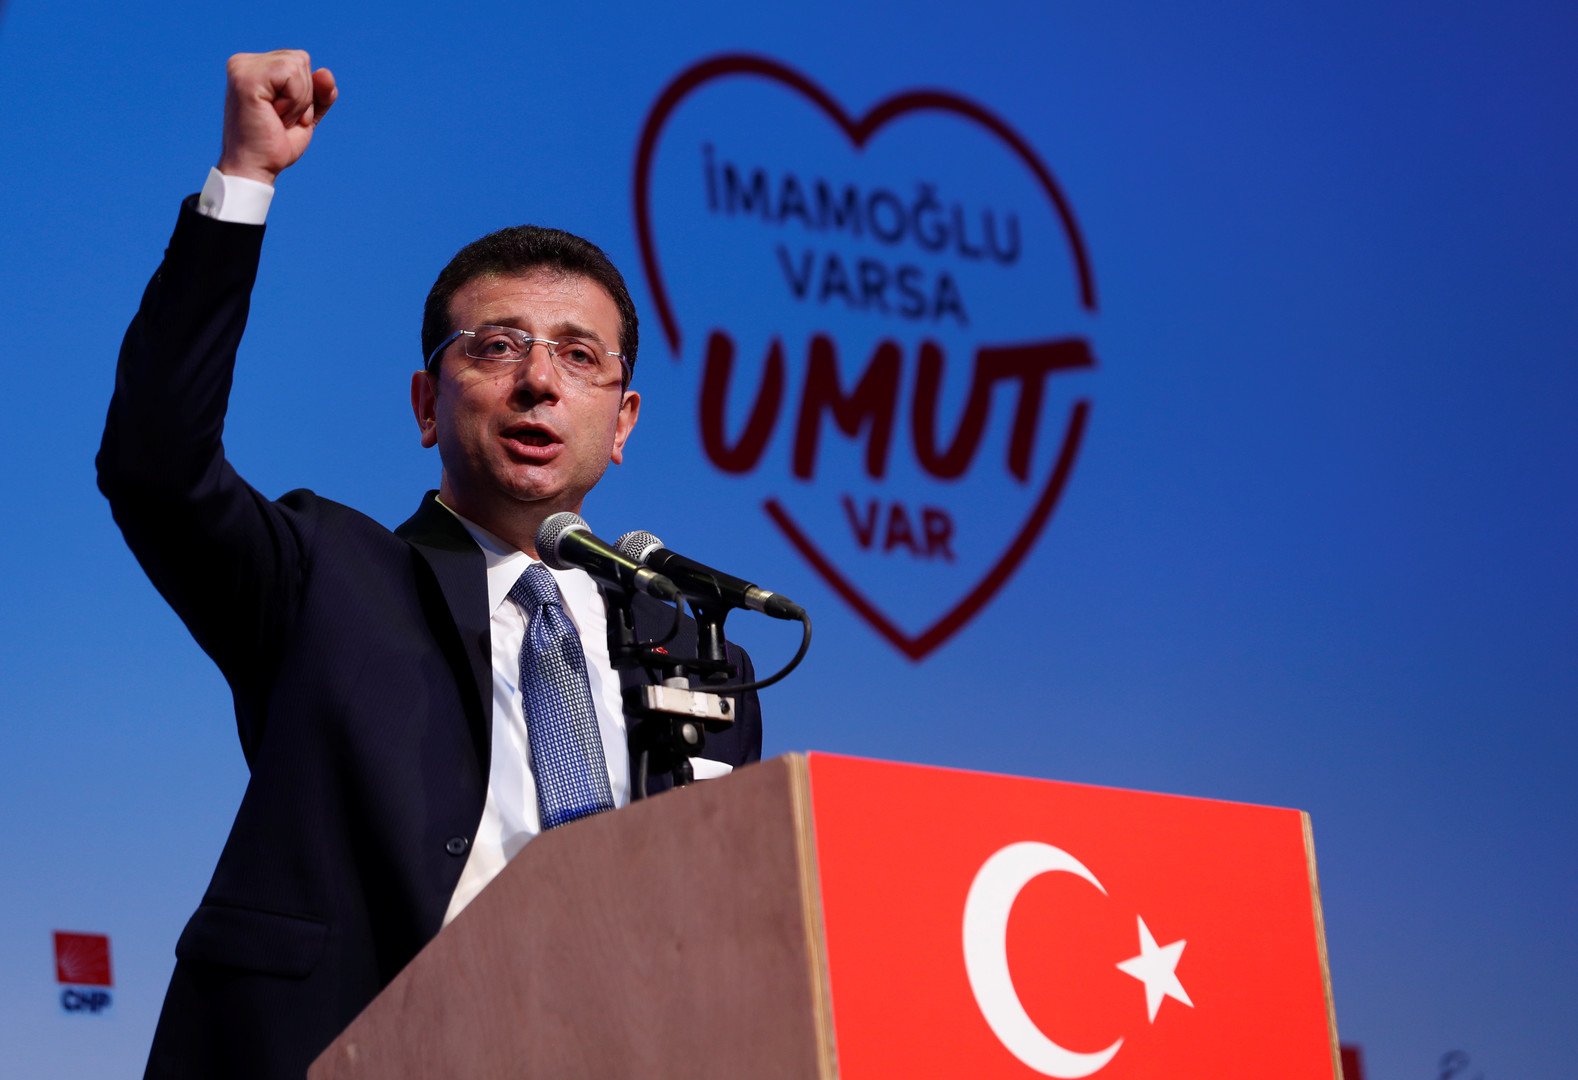 تفوق مرشح المعارضة لرئاسة بلدية اسطنبول على مرشح أردوغان في استطلاعات للرأي 